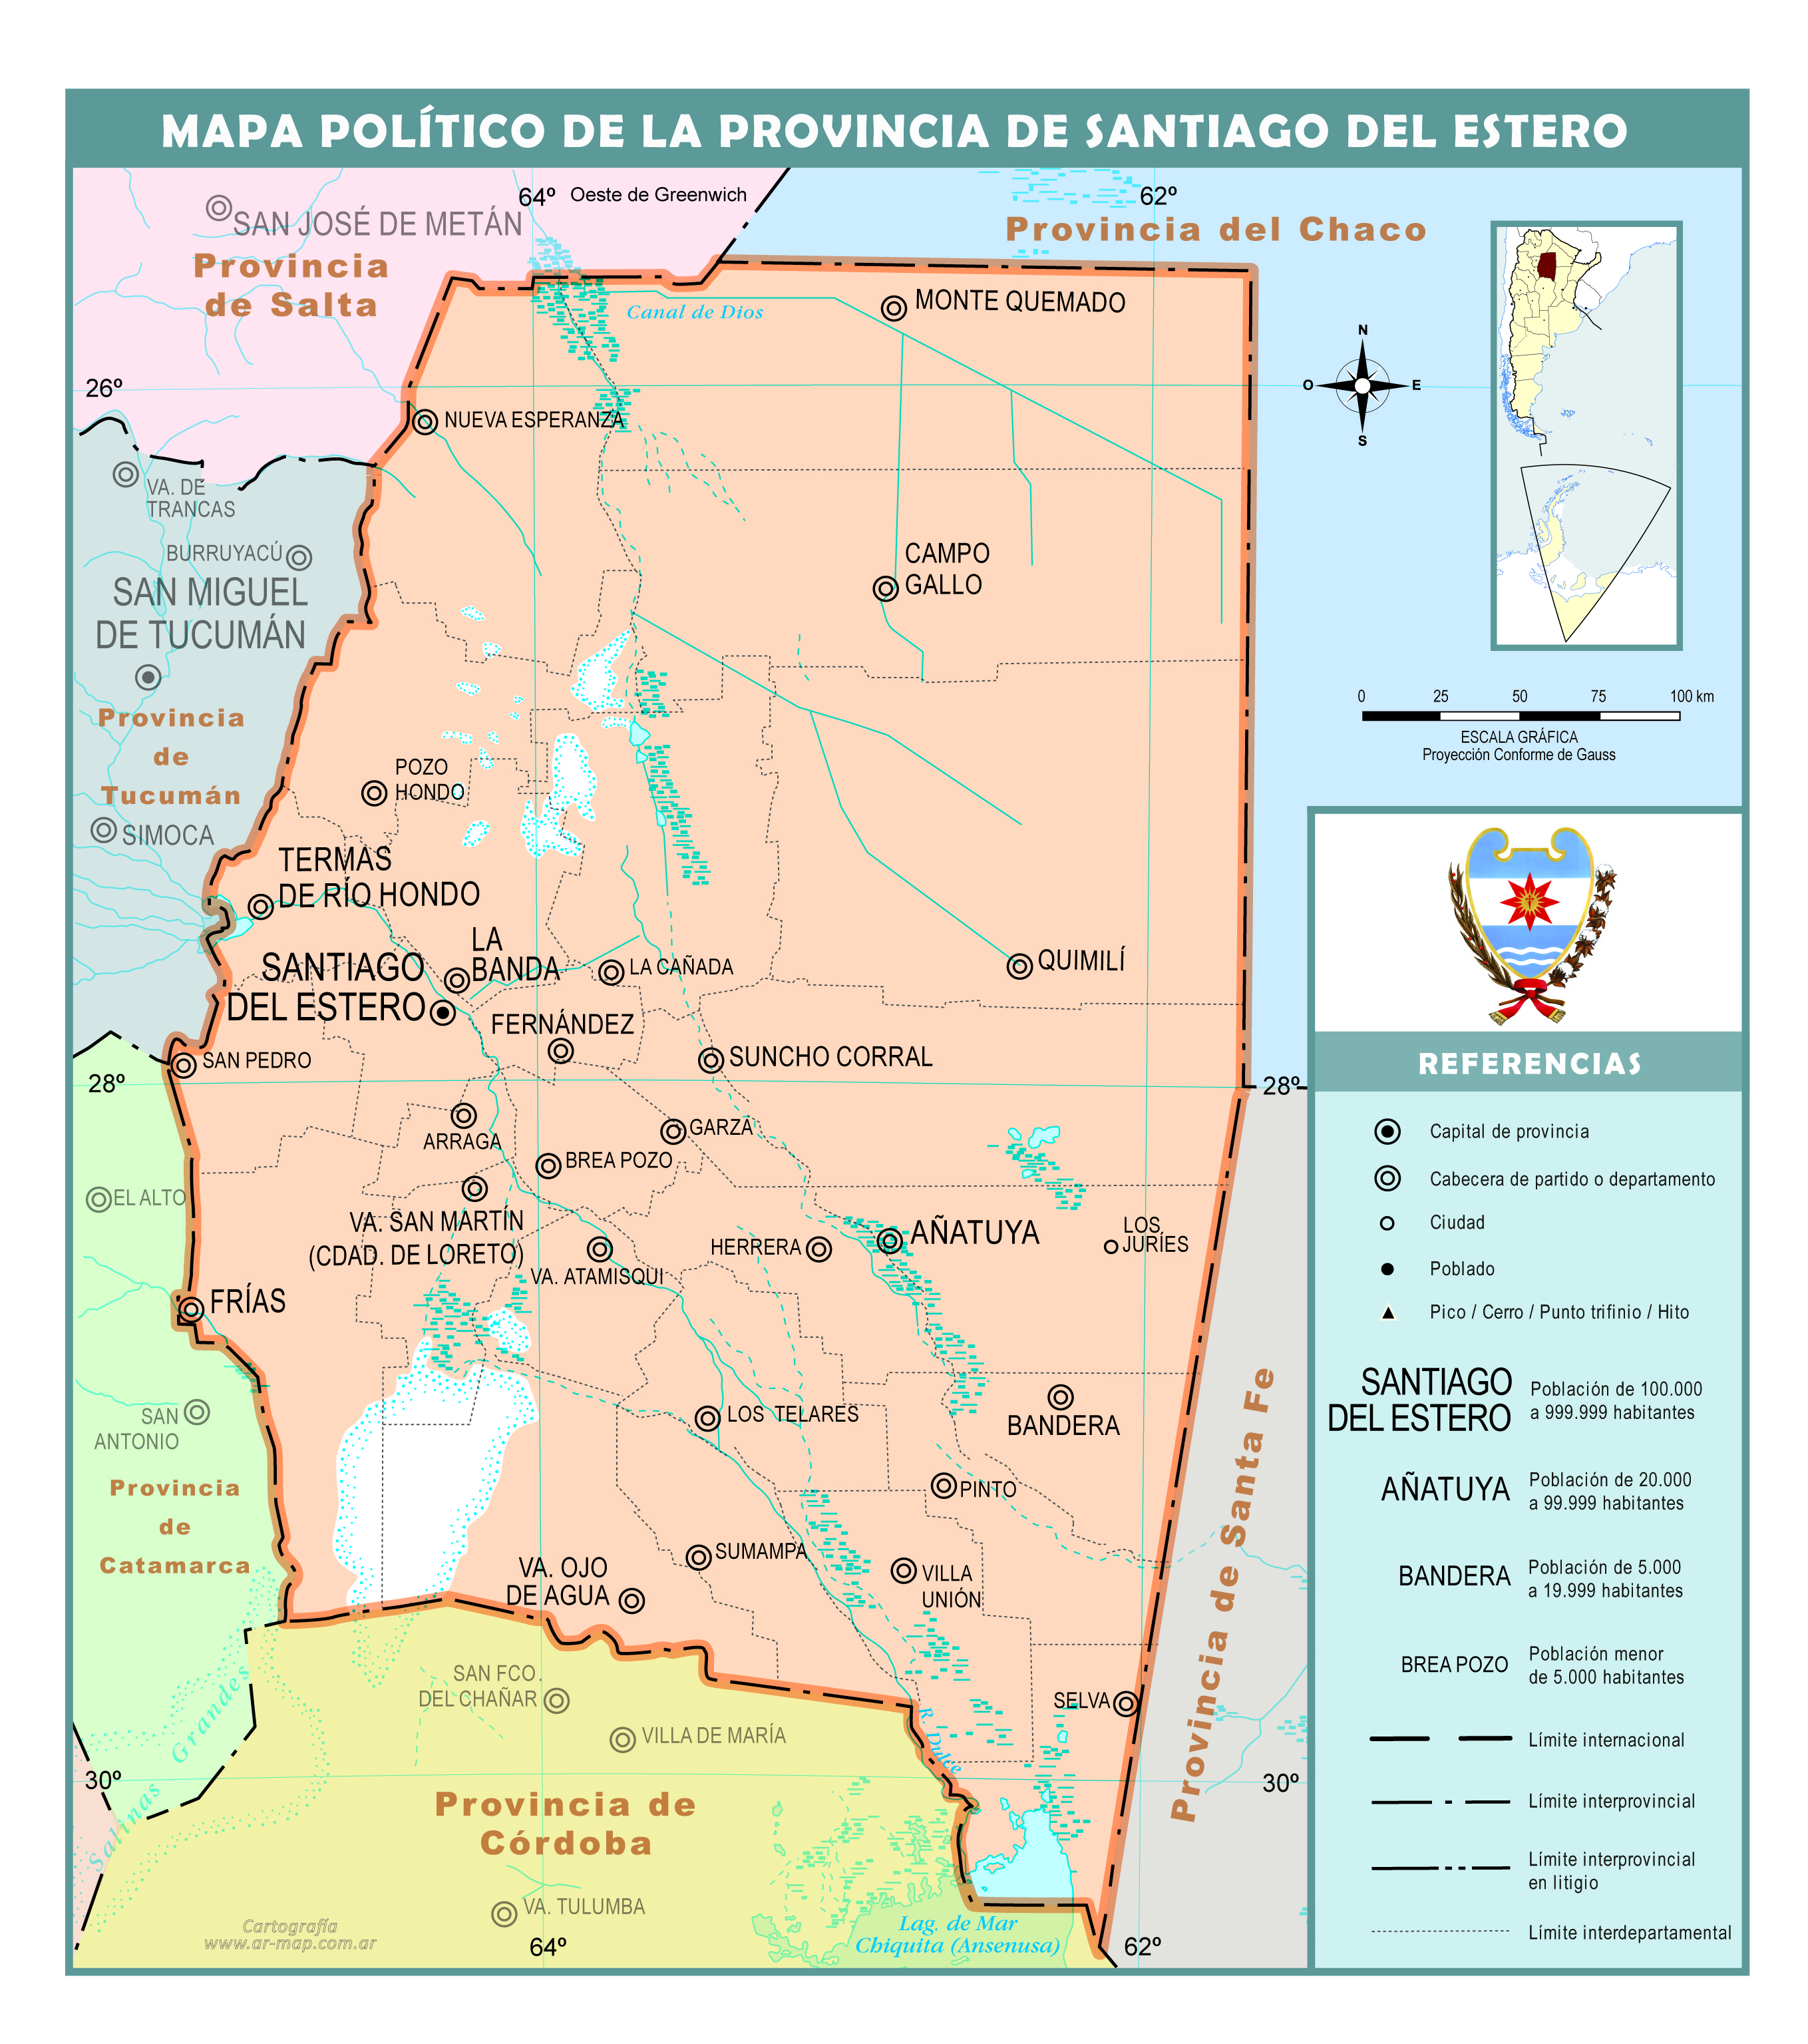 Mapa político de la provincia de Santiago del Estero